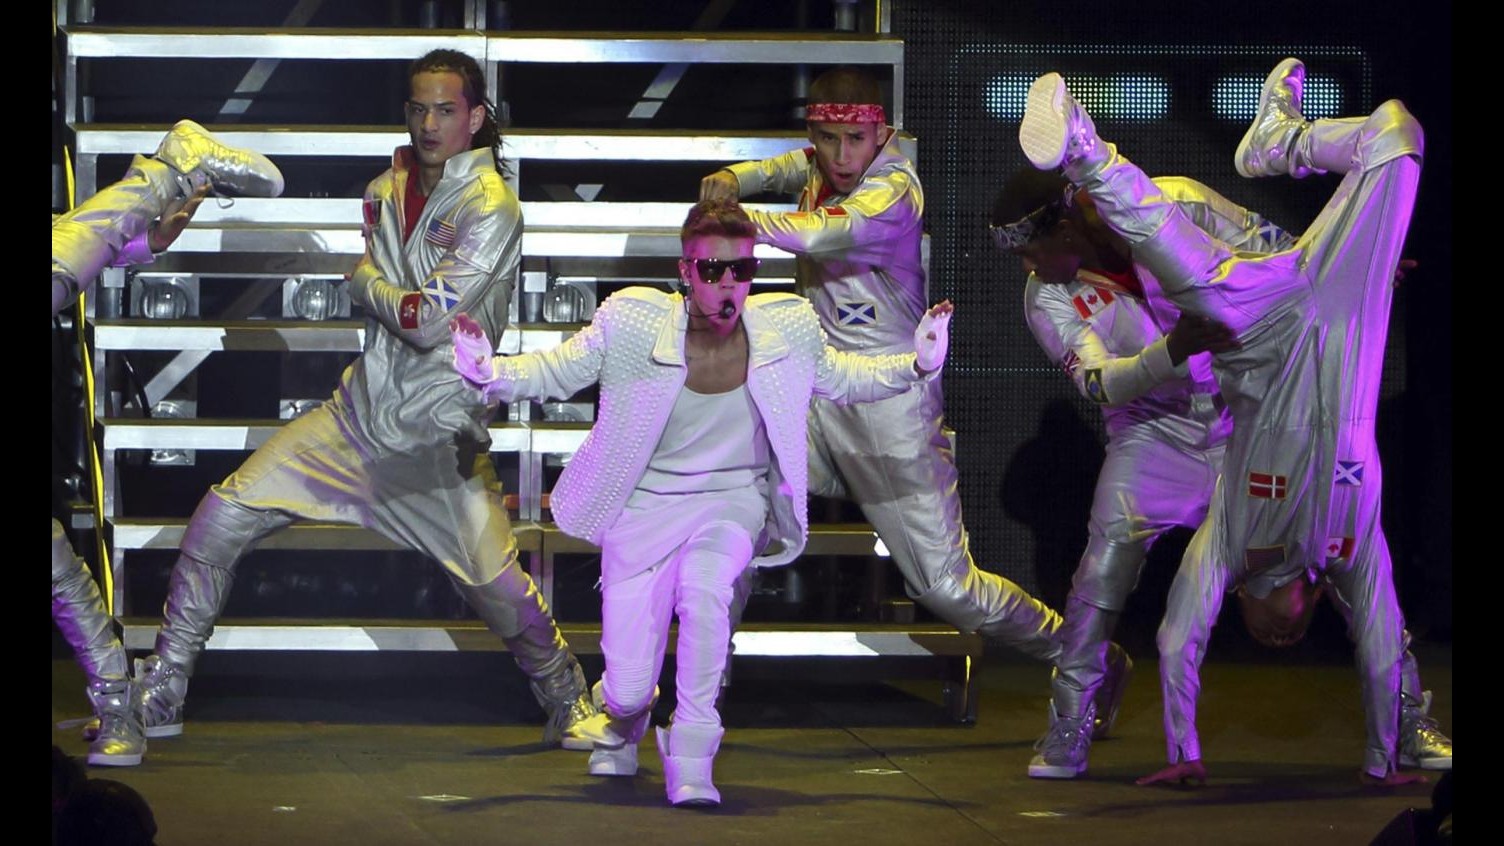 La ‘febbre’ per Justin Bieber esplode in Nuova Zelanda